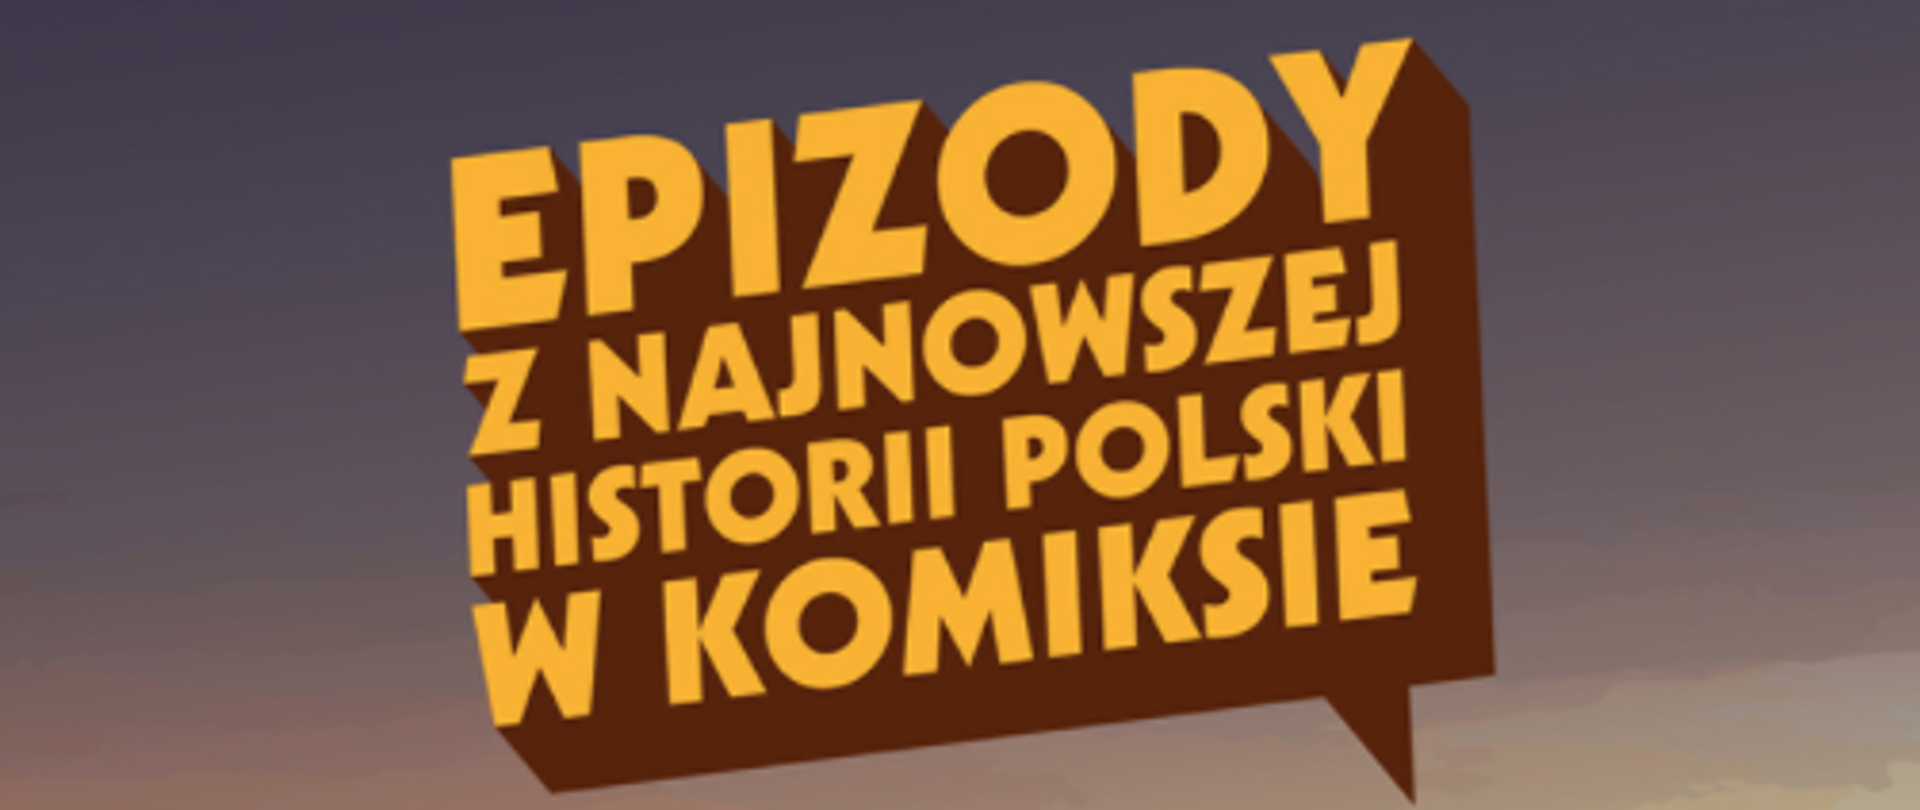 Epizody z najnowszej historii Polski w komiksie